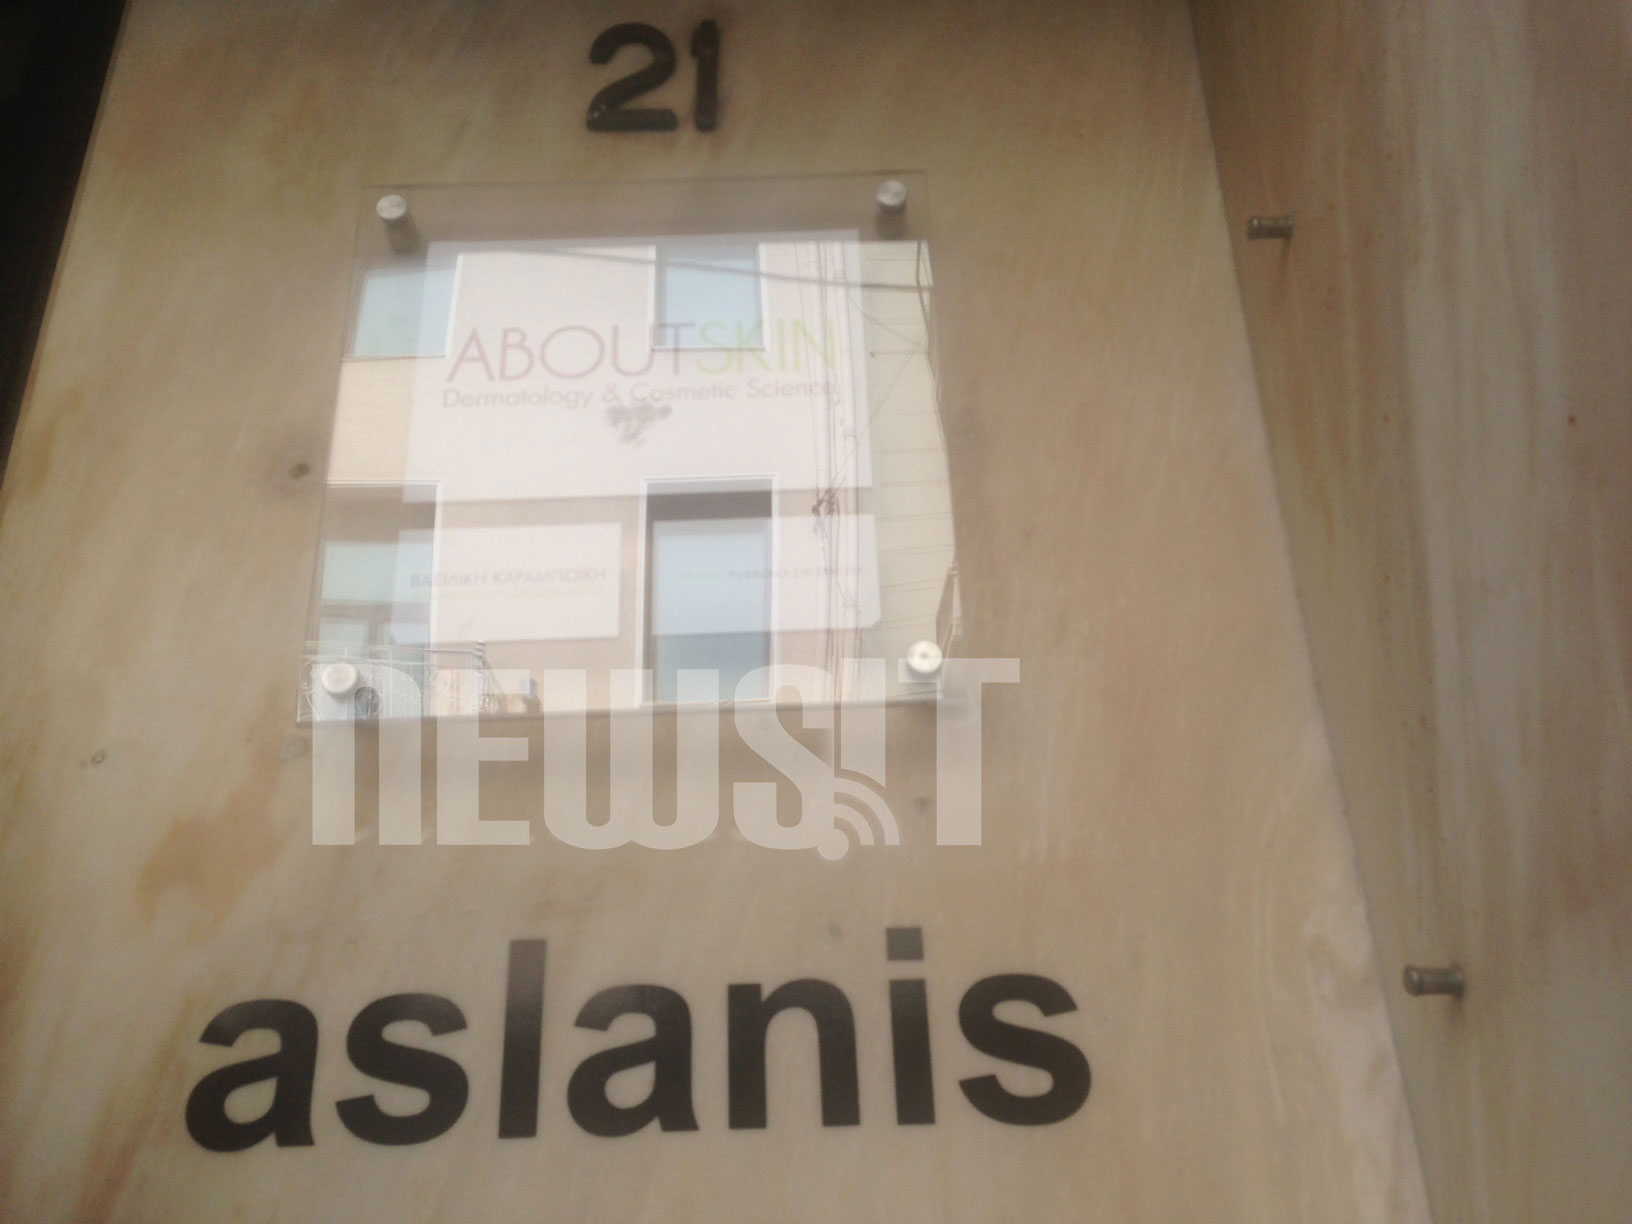 Στο κτίριο της οδού Σκουφά 21 ο Μιχάλης Ασλάνης είχε μετακομίσει πριν από 3 μήνες - ΦΩΤΟΓΡΑΦΙΑ NEWSIT